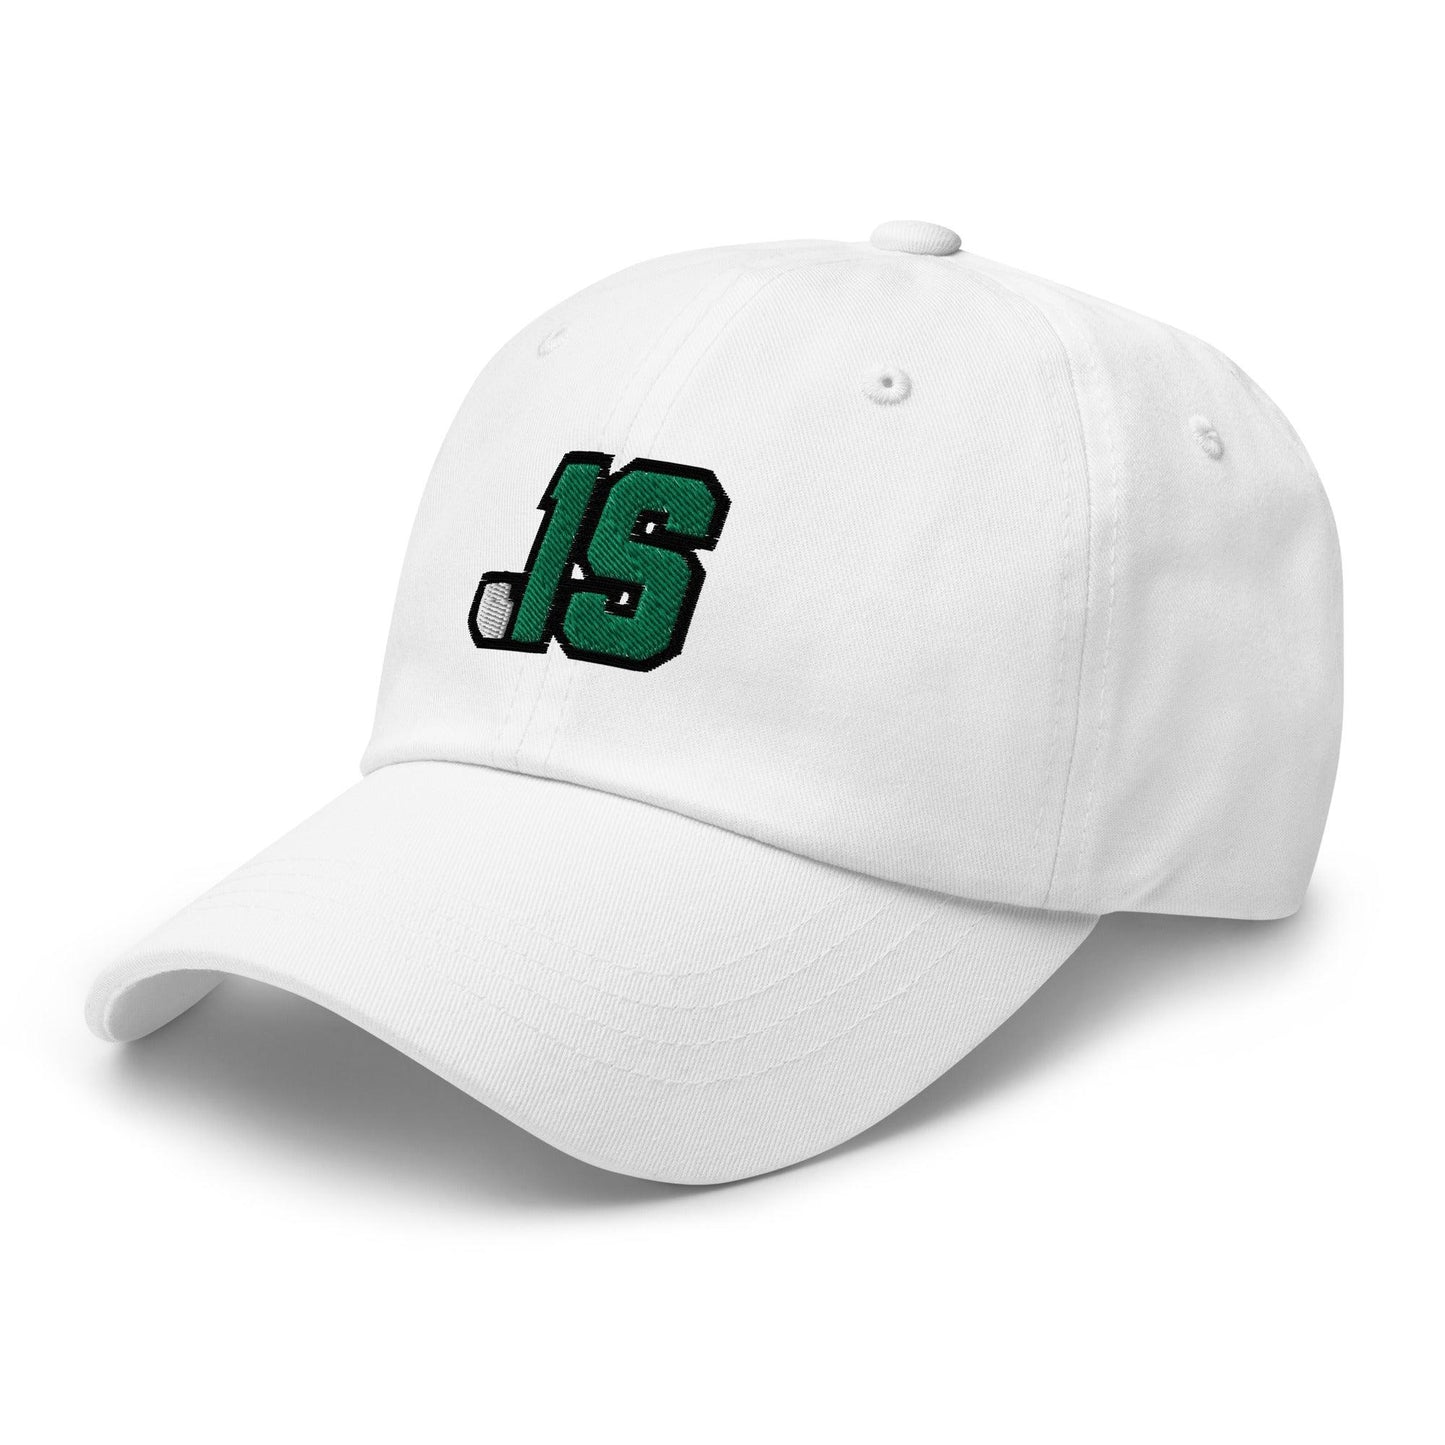 Jyaire Shorter "JS1" hat - Fan Arch